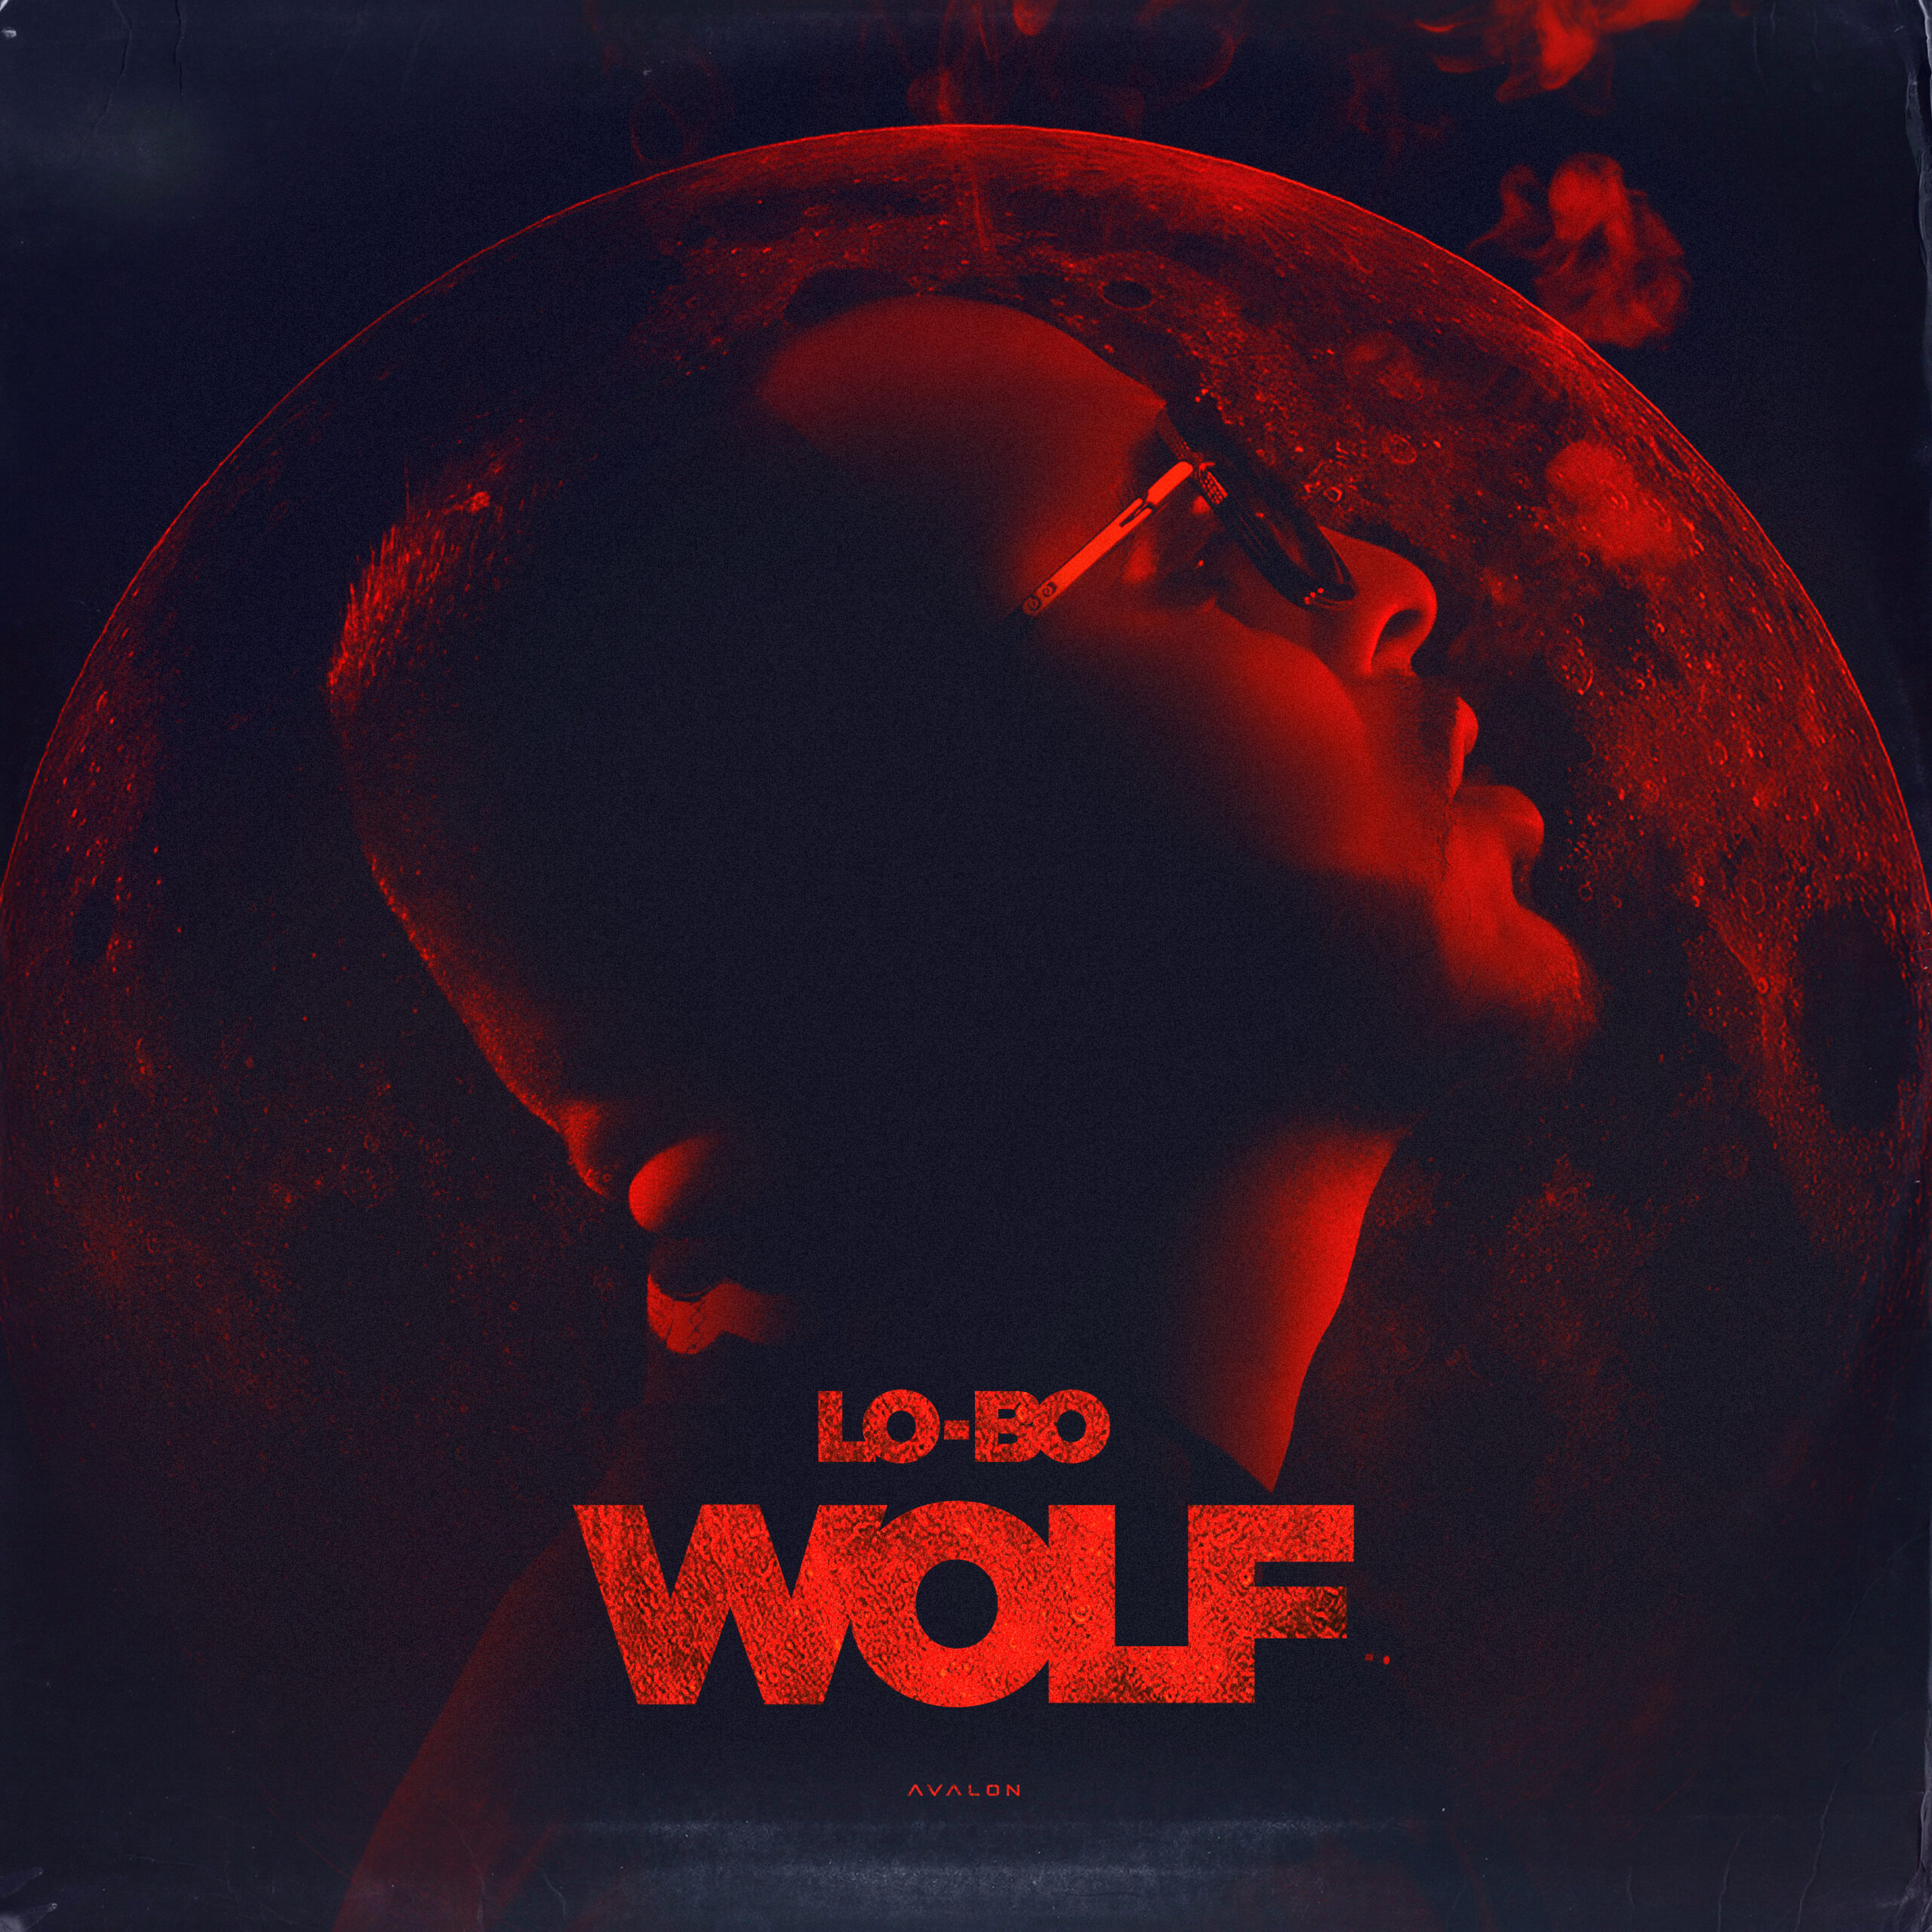 EP WOLF van Lo-Bo is vanaf NU te streamen op Spotify!